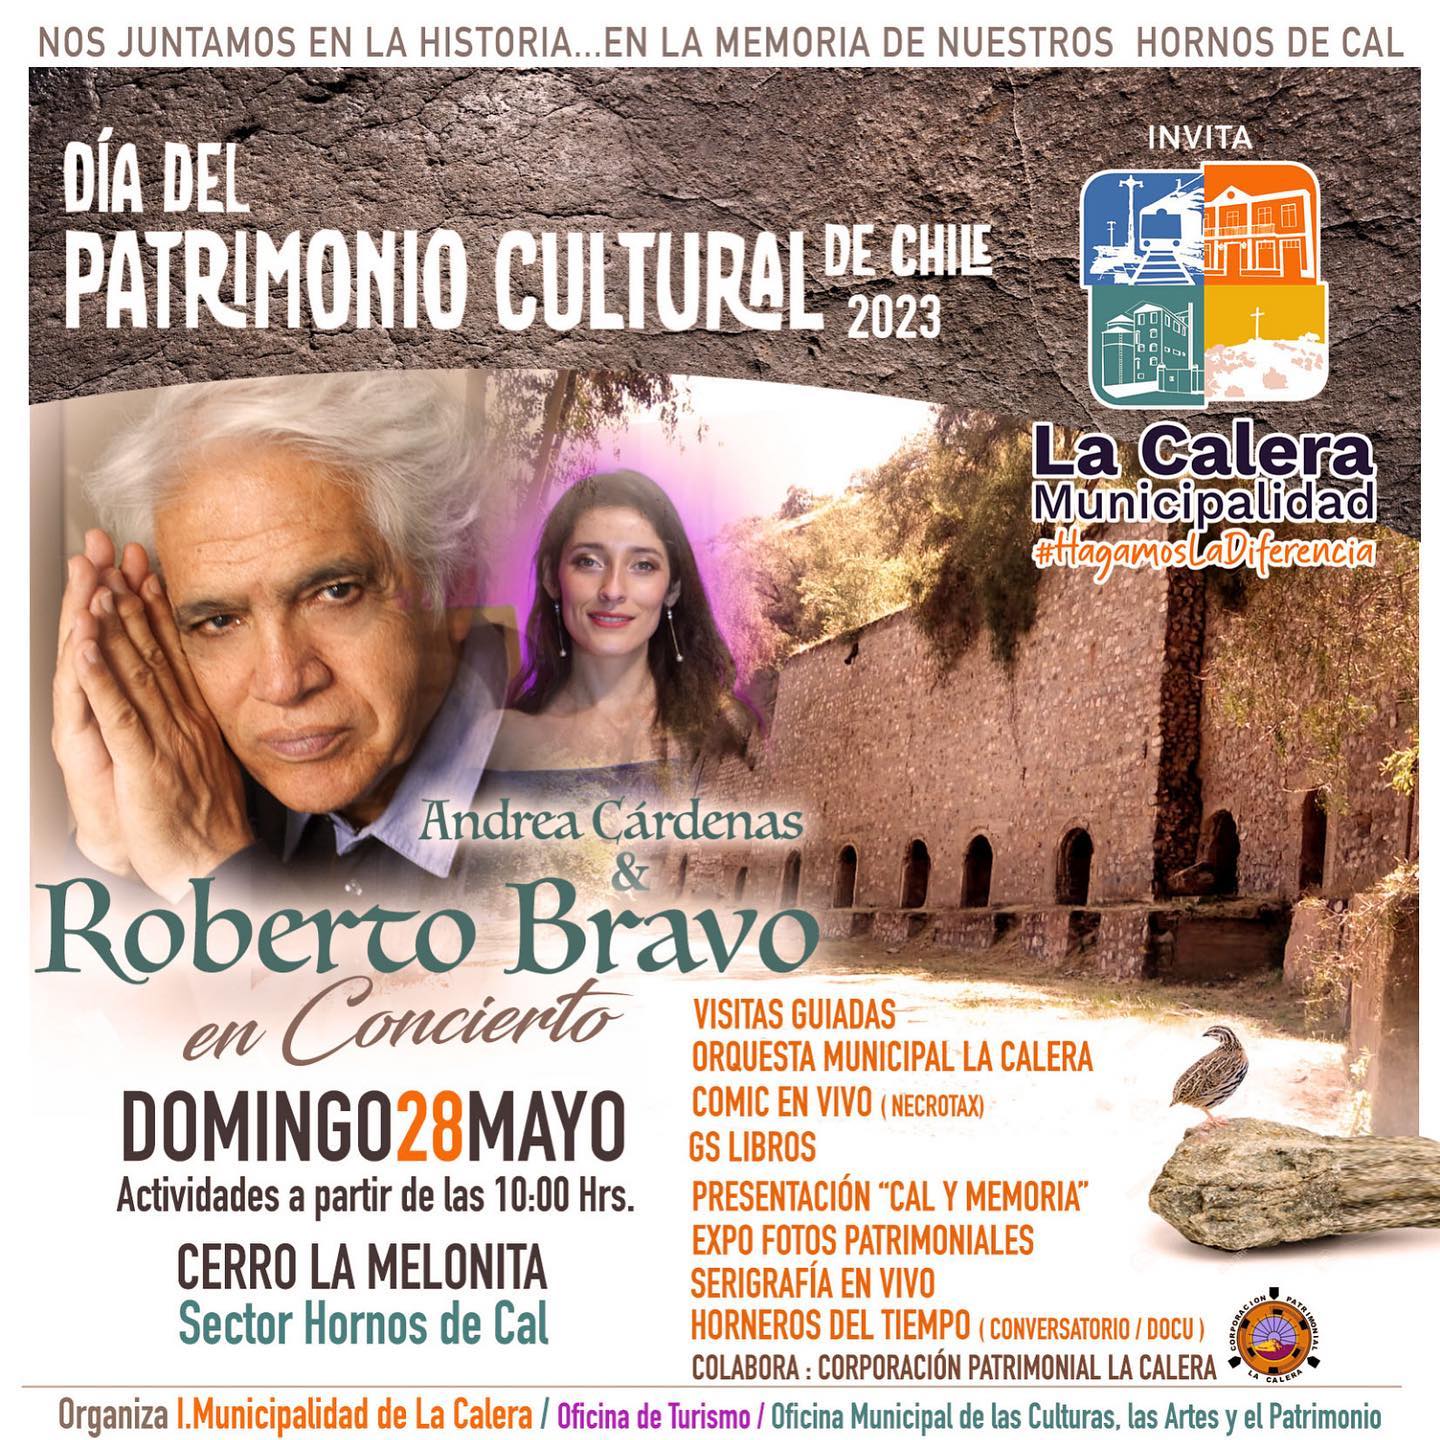 Pianista Roberto Bravo dará concierto en La Calera por el Día de los Patrimonios